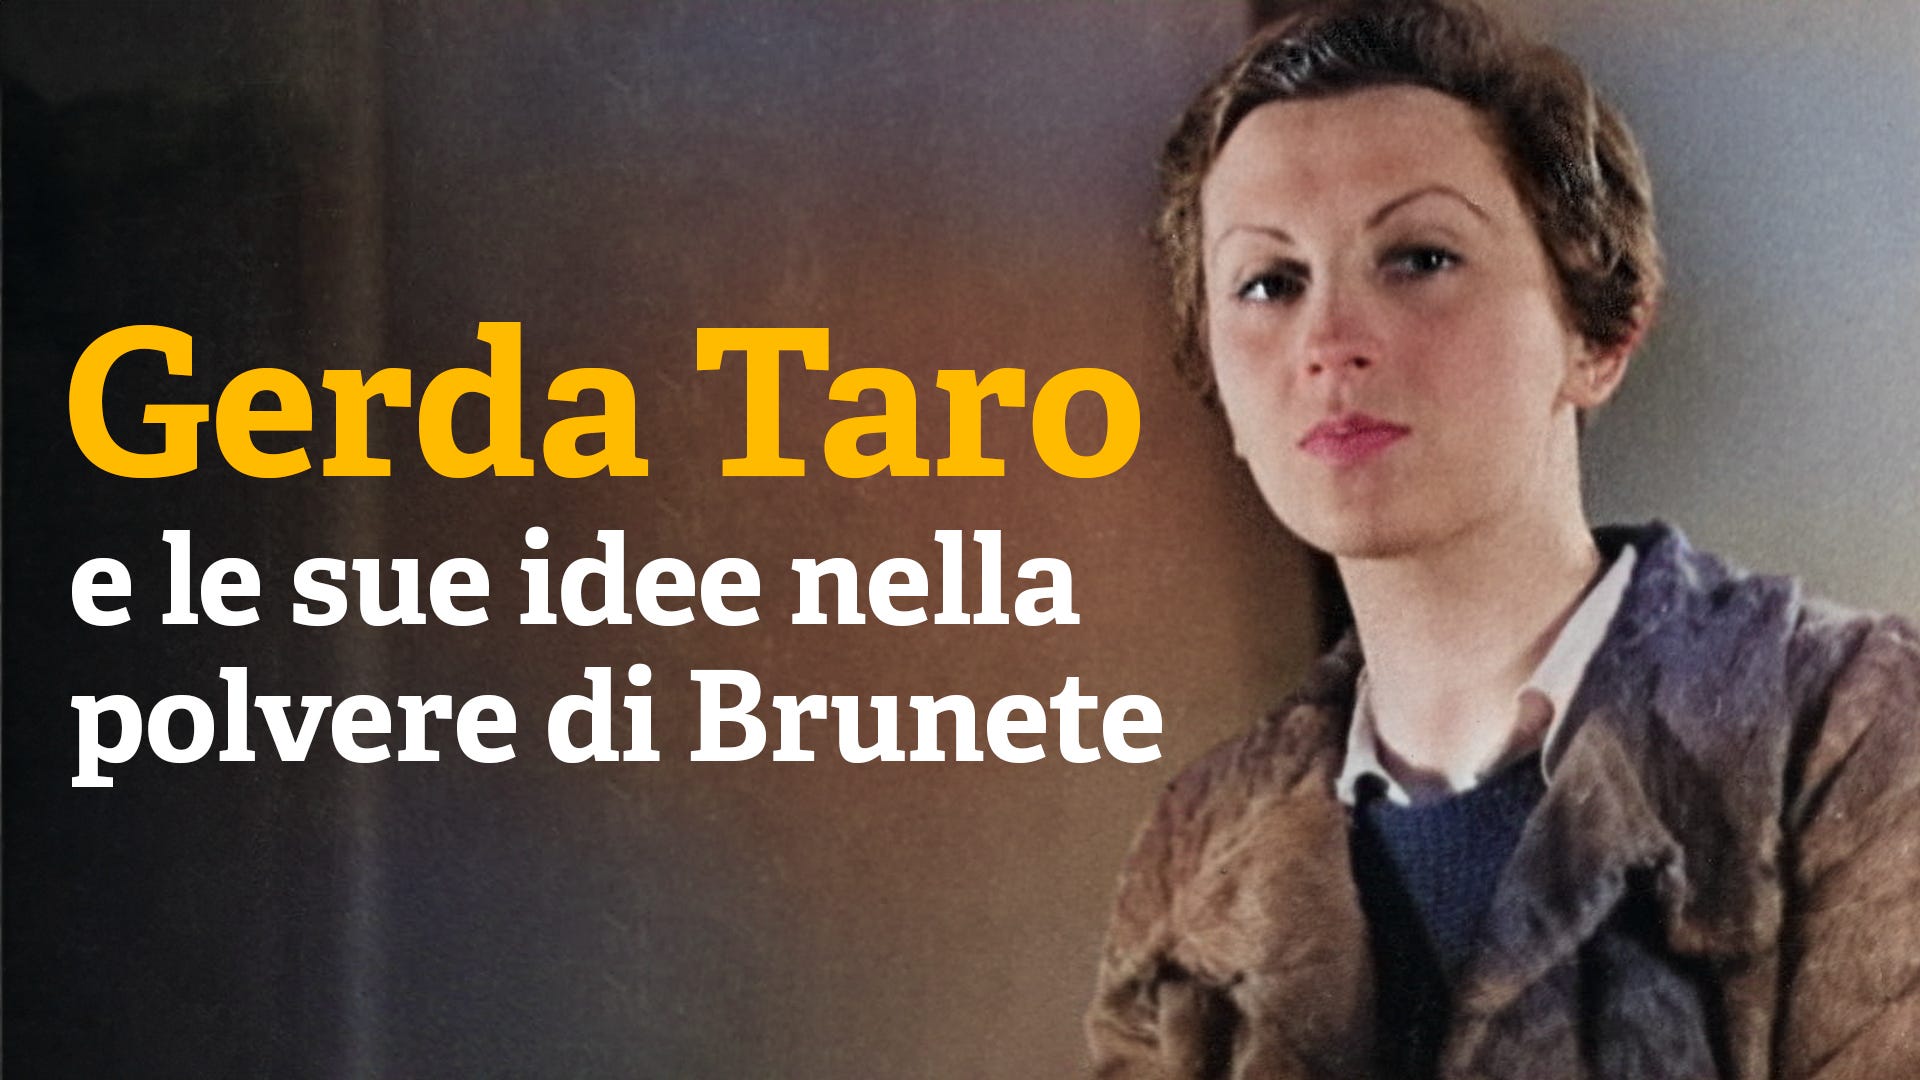 Gerda Taro e le sue idee nella polvere di Brunete